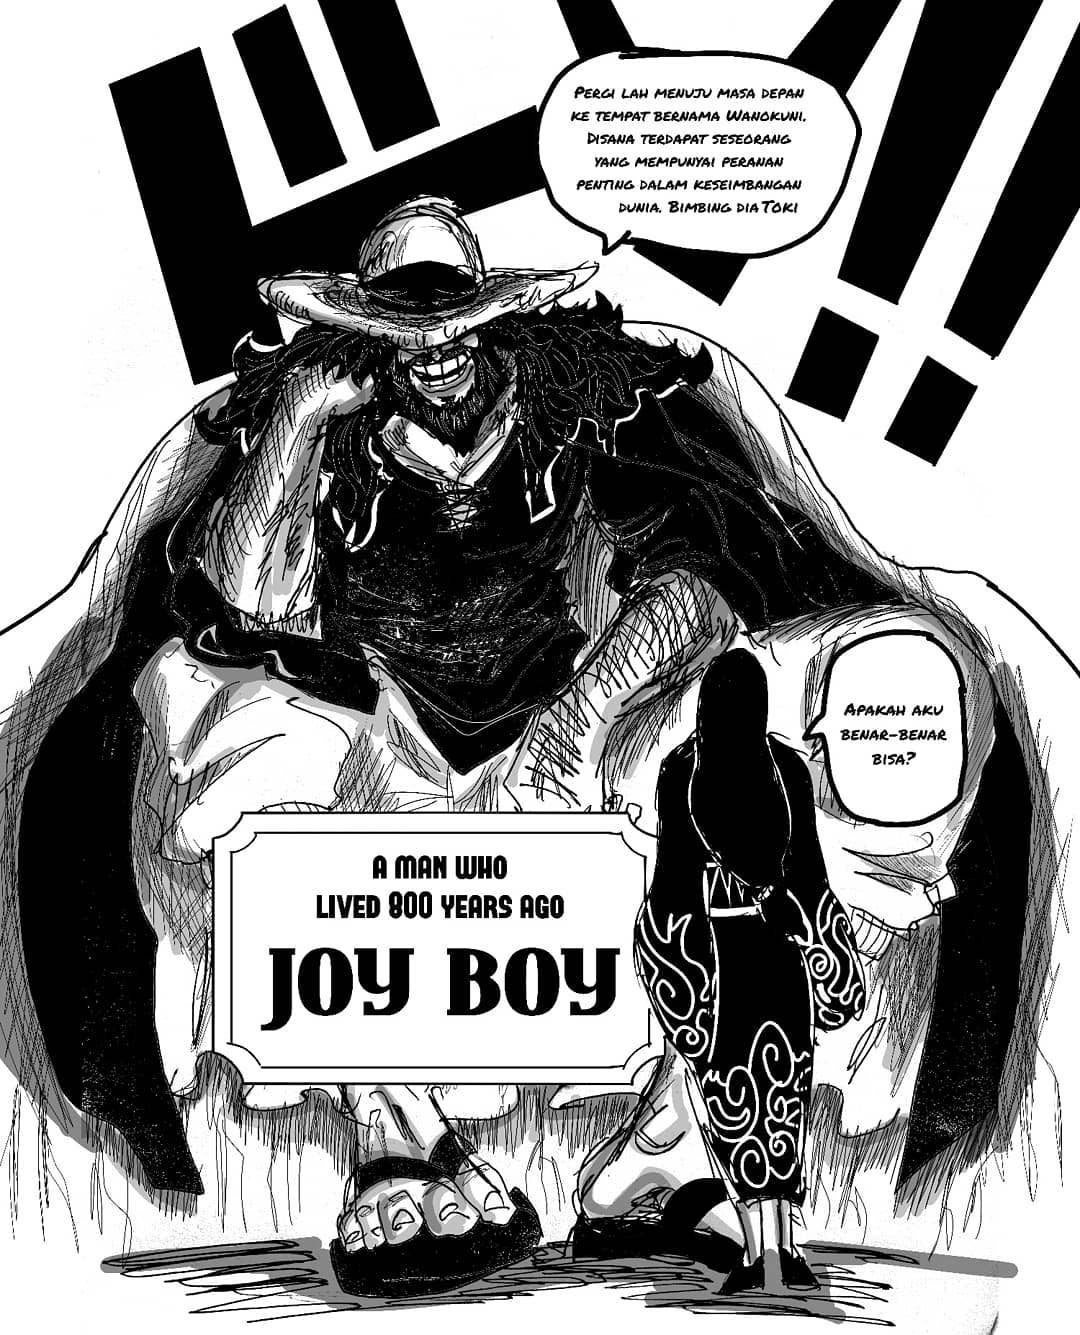 Joy Boy concept art